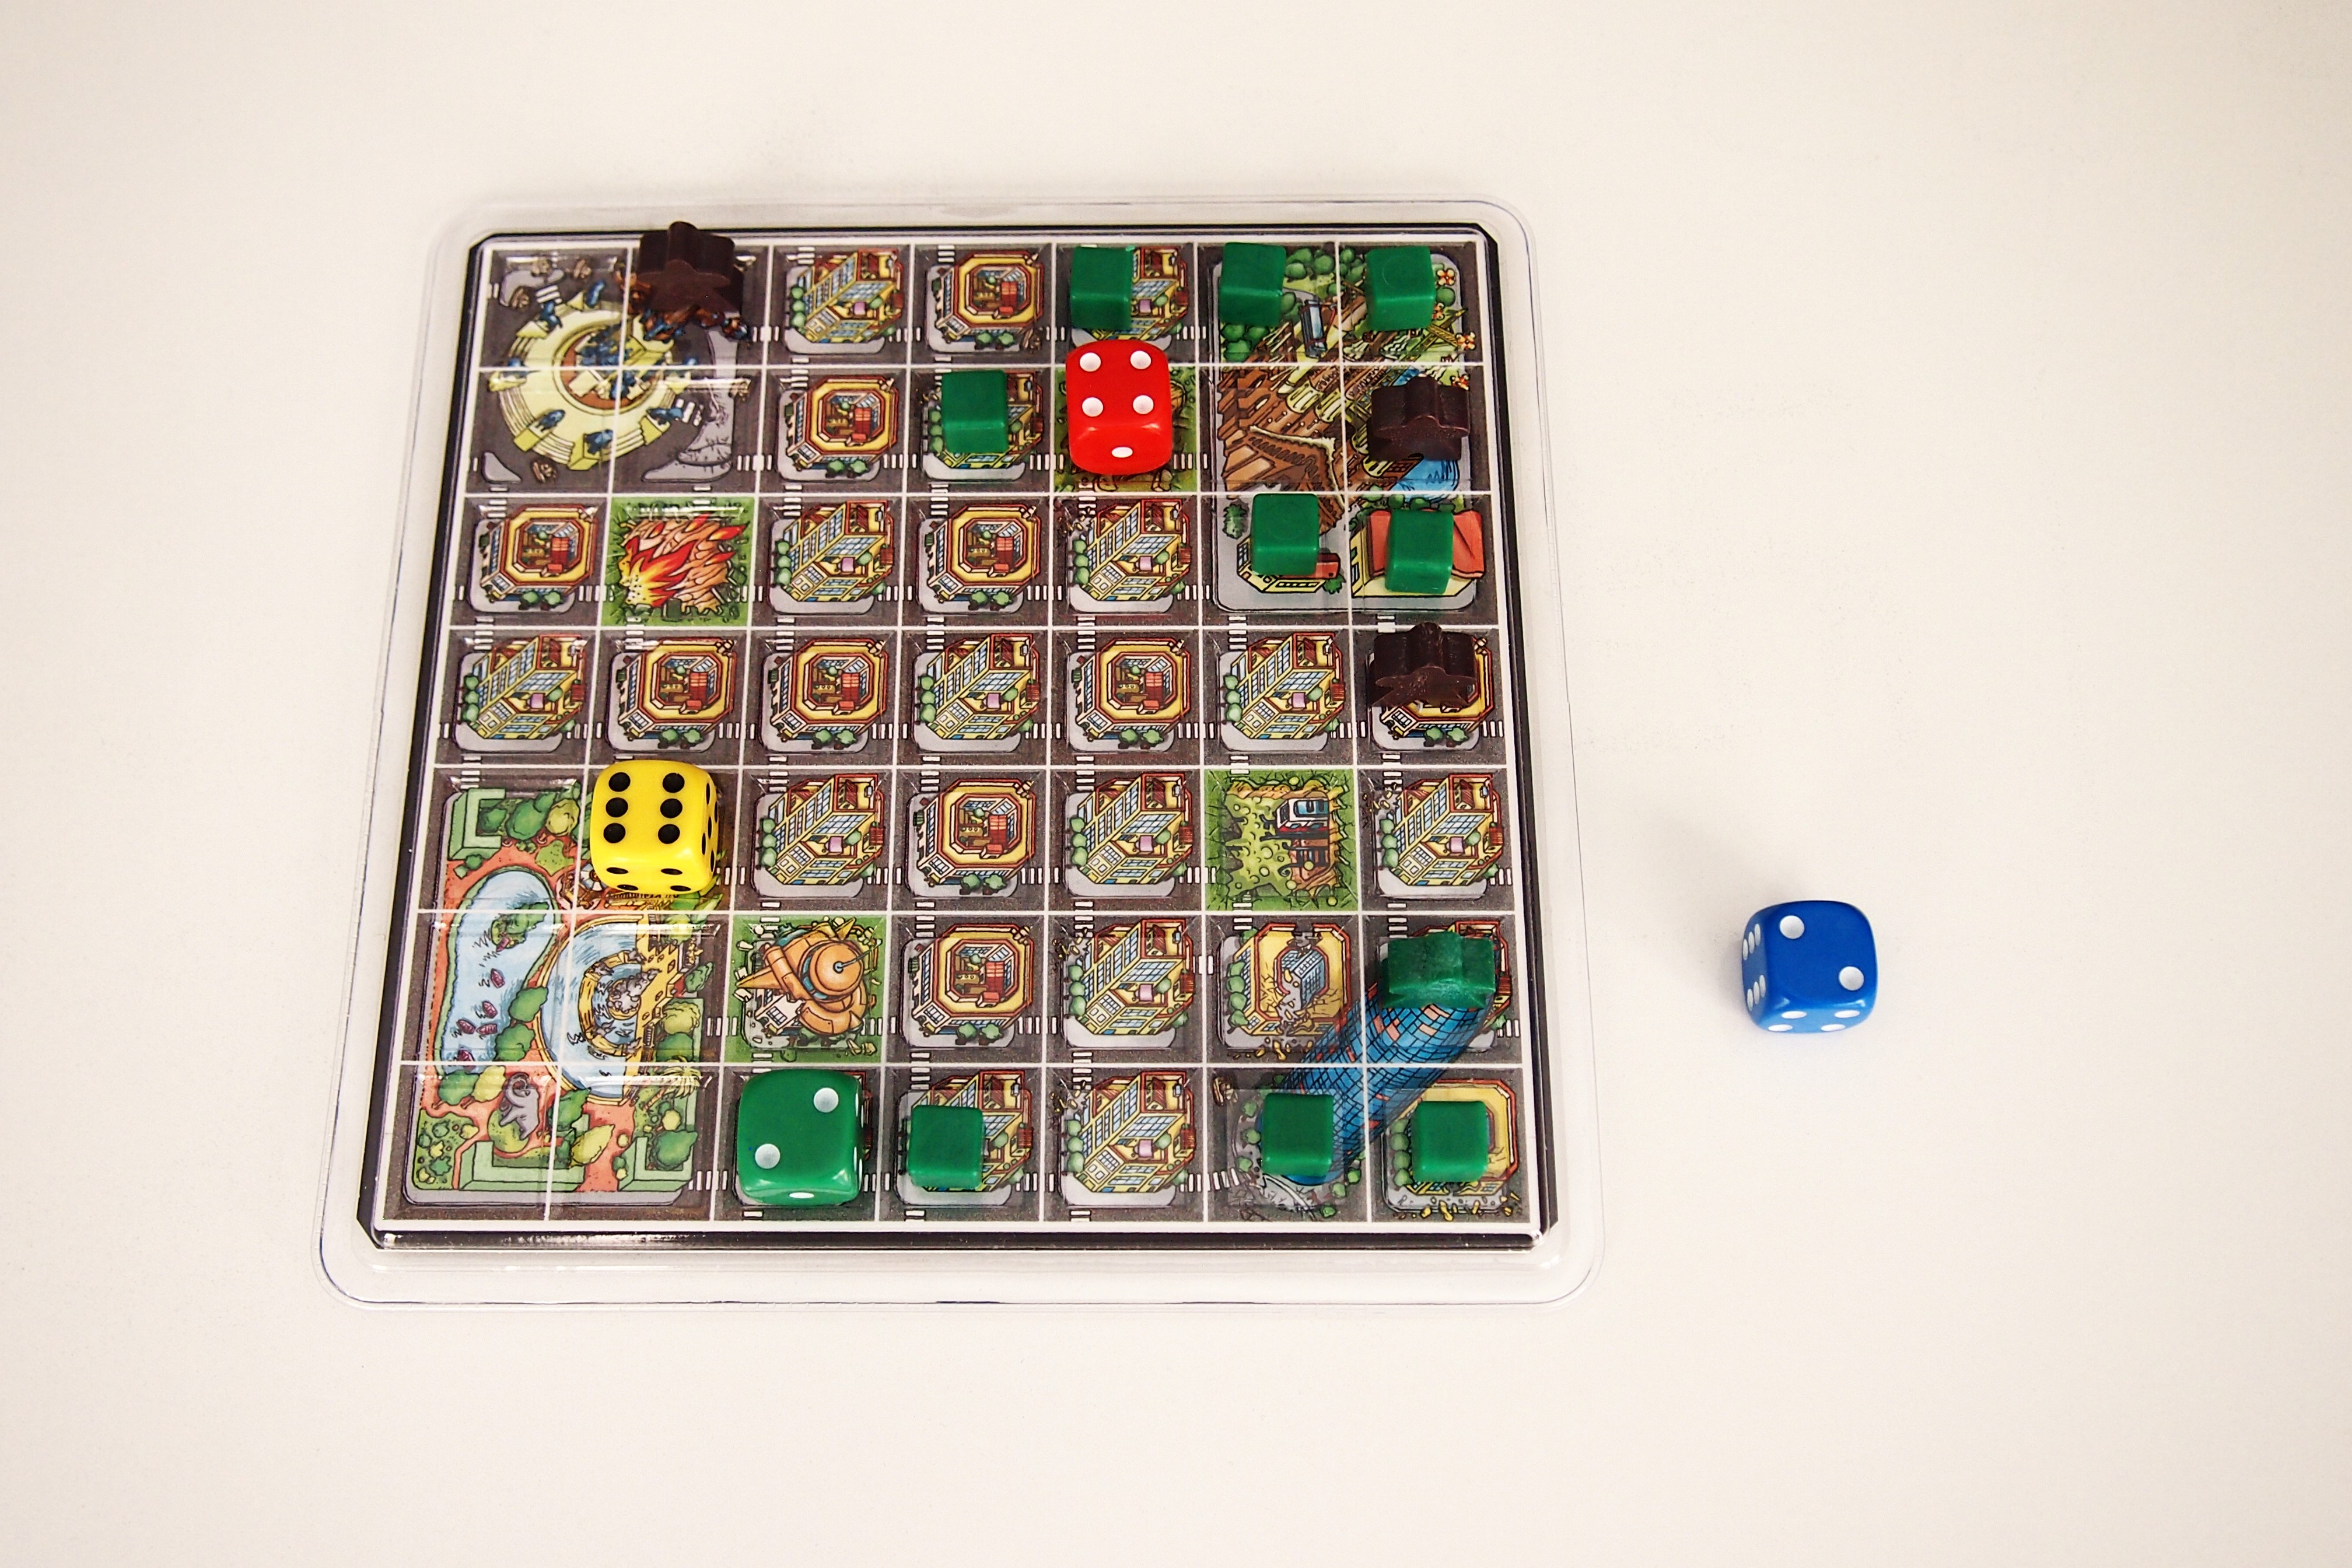 La partida finaliza cuando se agoten los cubos, cuando sólo queden tres o menos ejércitos sobre el tablero o cuando un jugador sea eliminado.